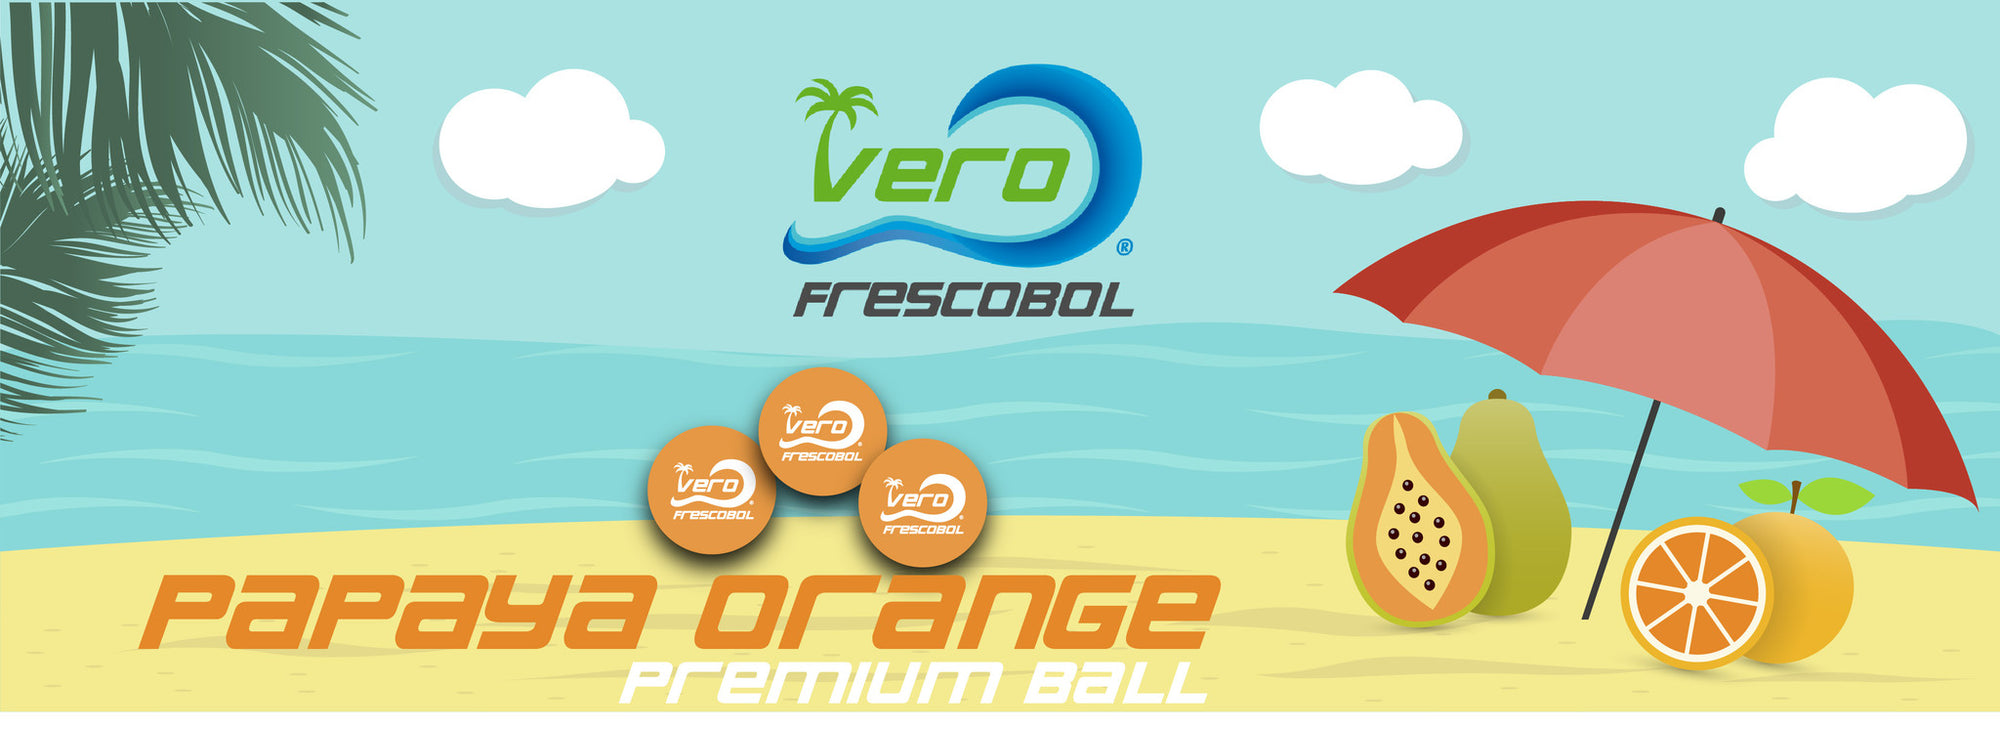 Frescobol balls in Papaya Orange for fun beach game play